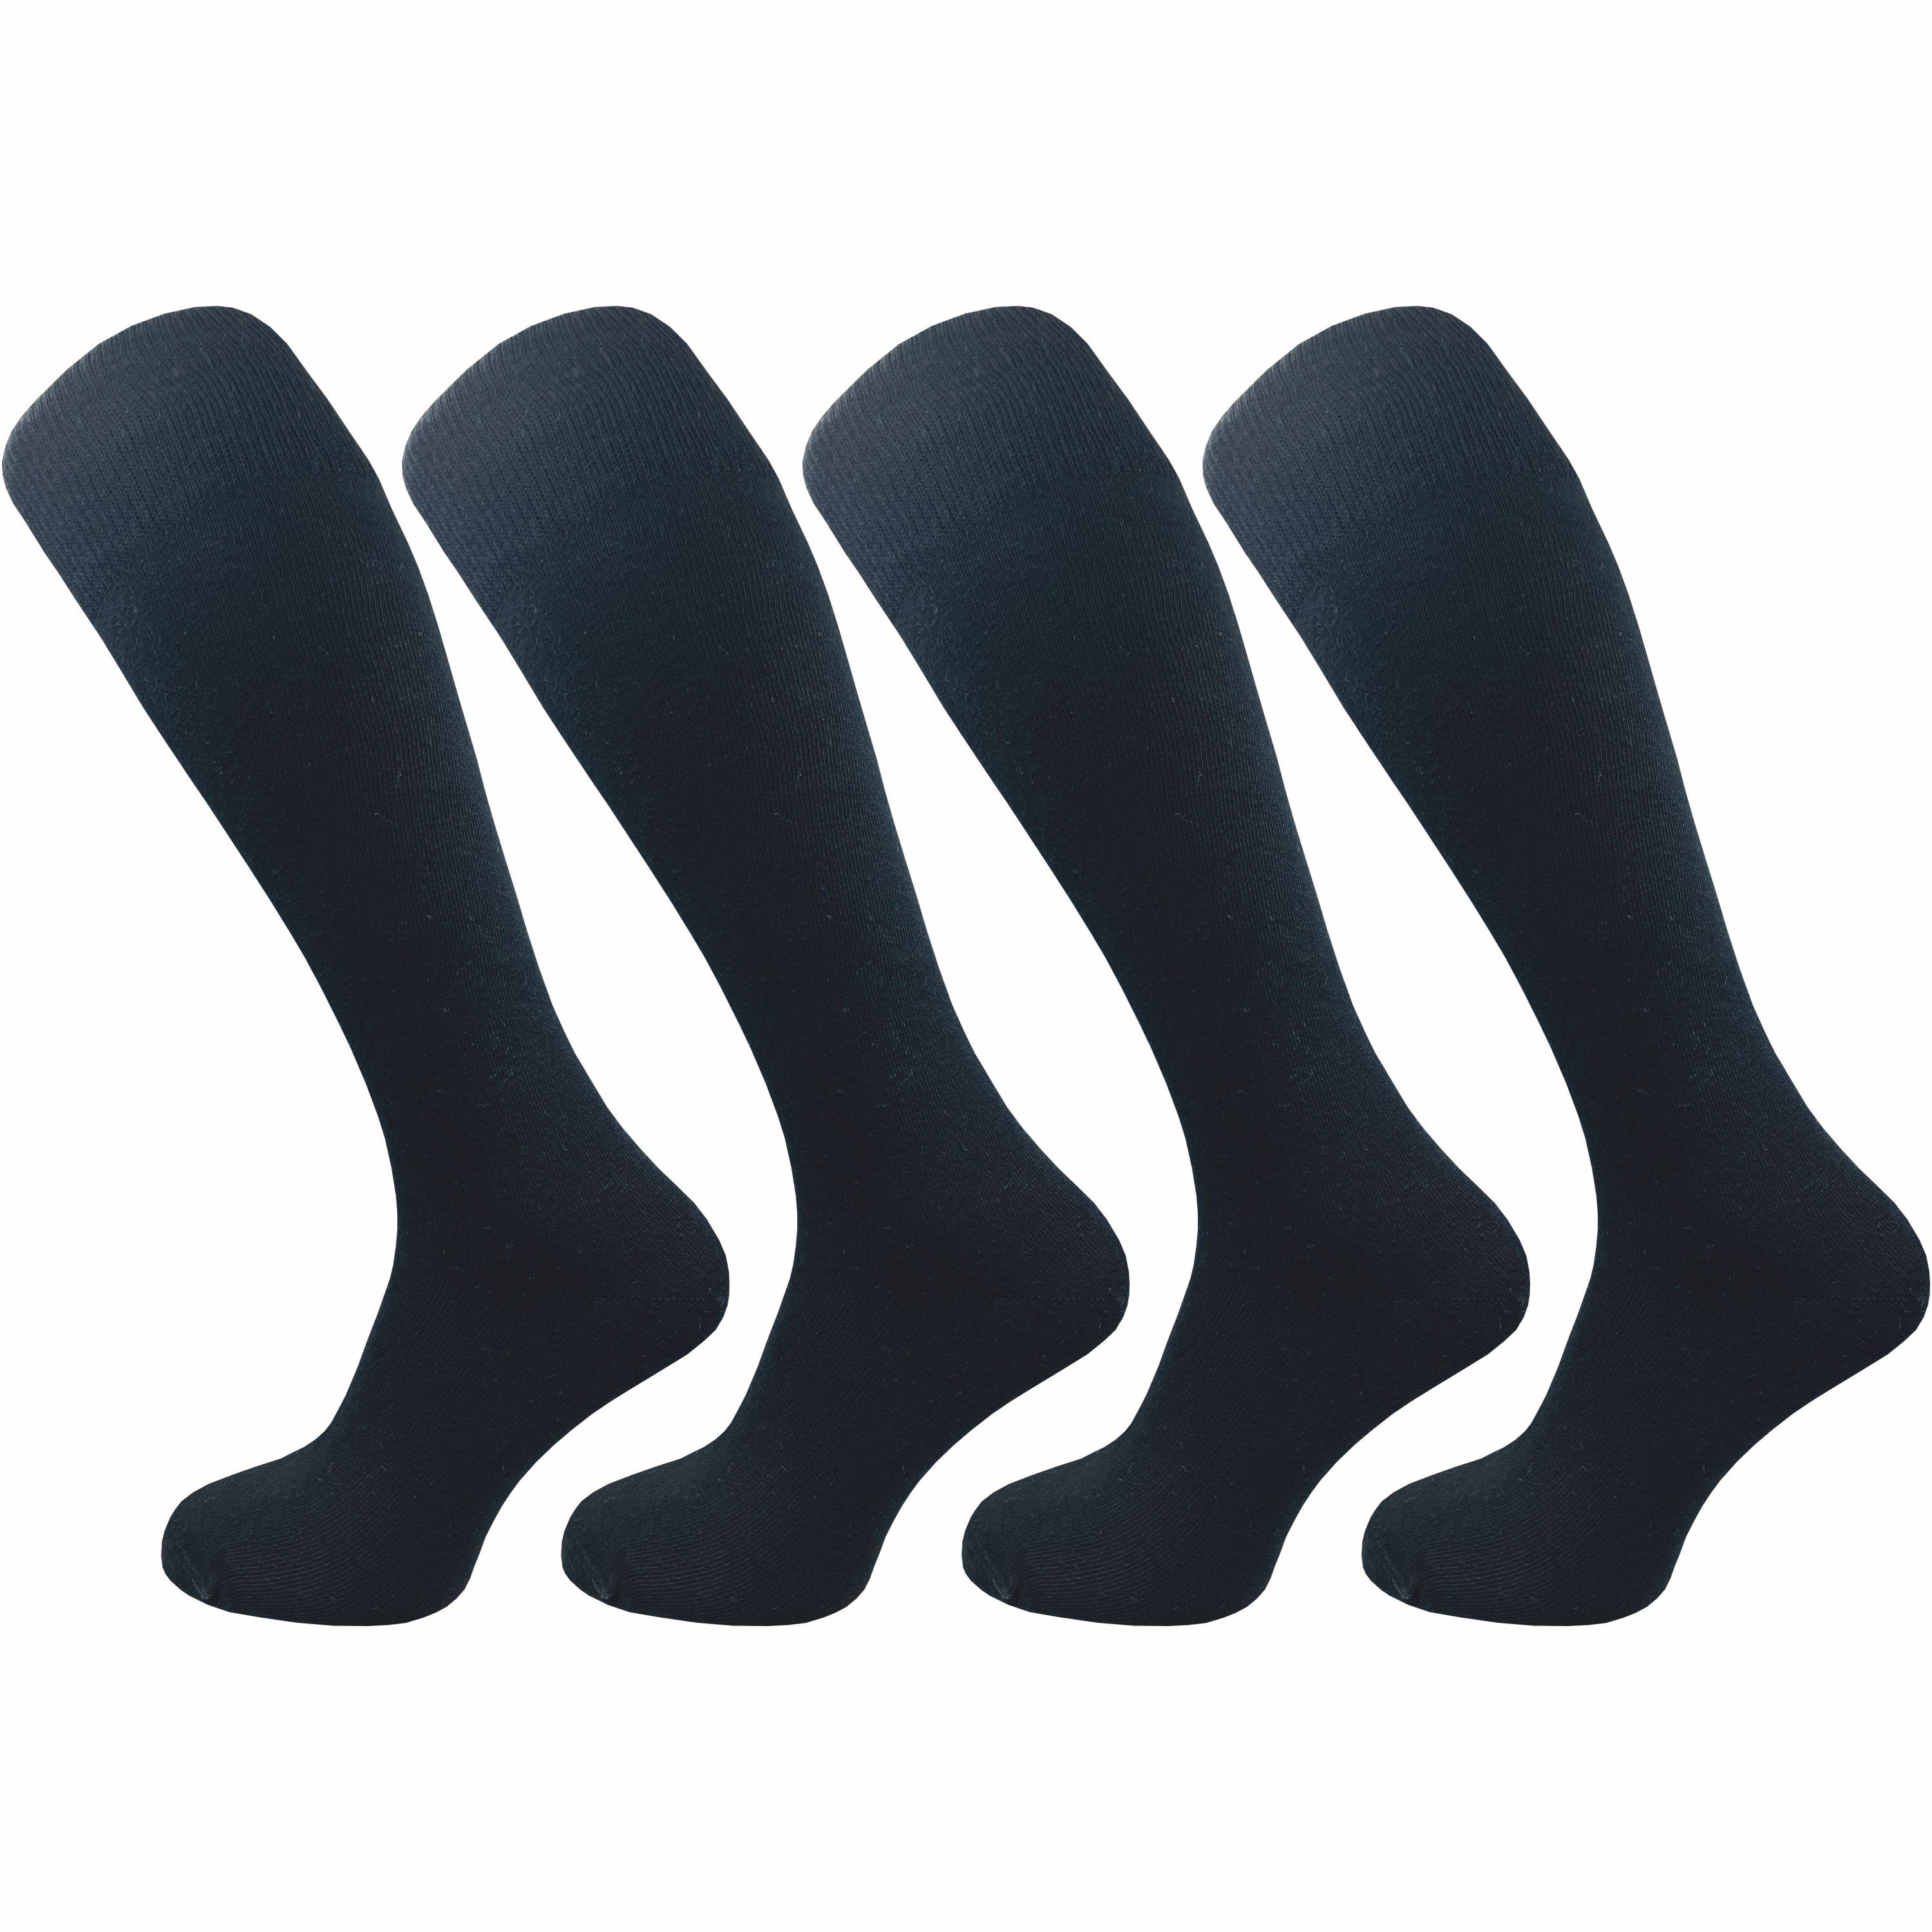 GAWILO Kniestrümpfe für Damen aus Baumwolle - extra weich & ohne drückende Naht (4 Paar) Lange Socken mit speziellem Komfortbund, der nicht einschneidet schwarz